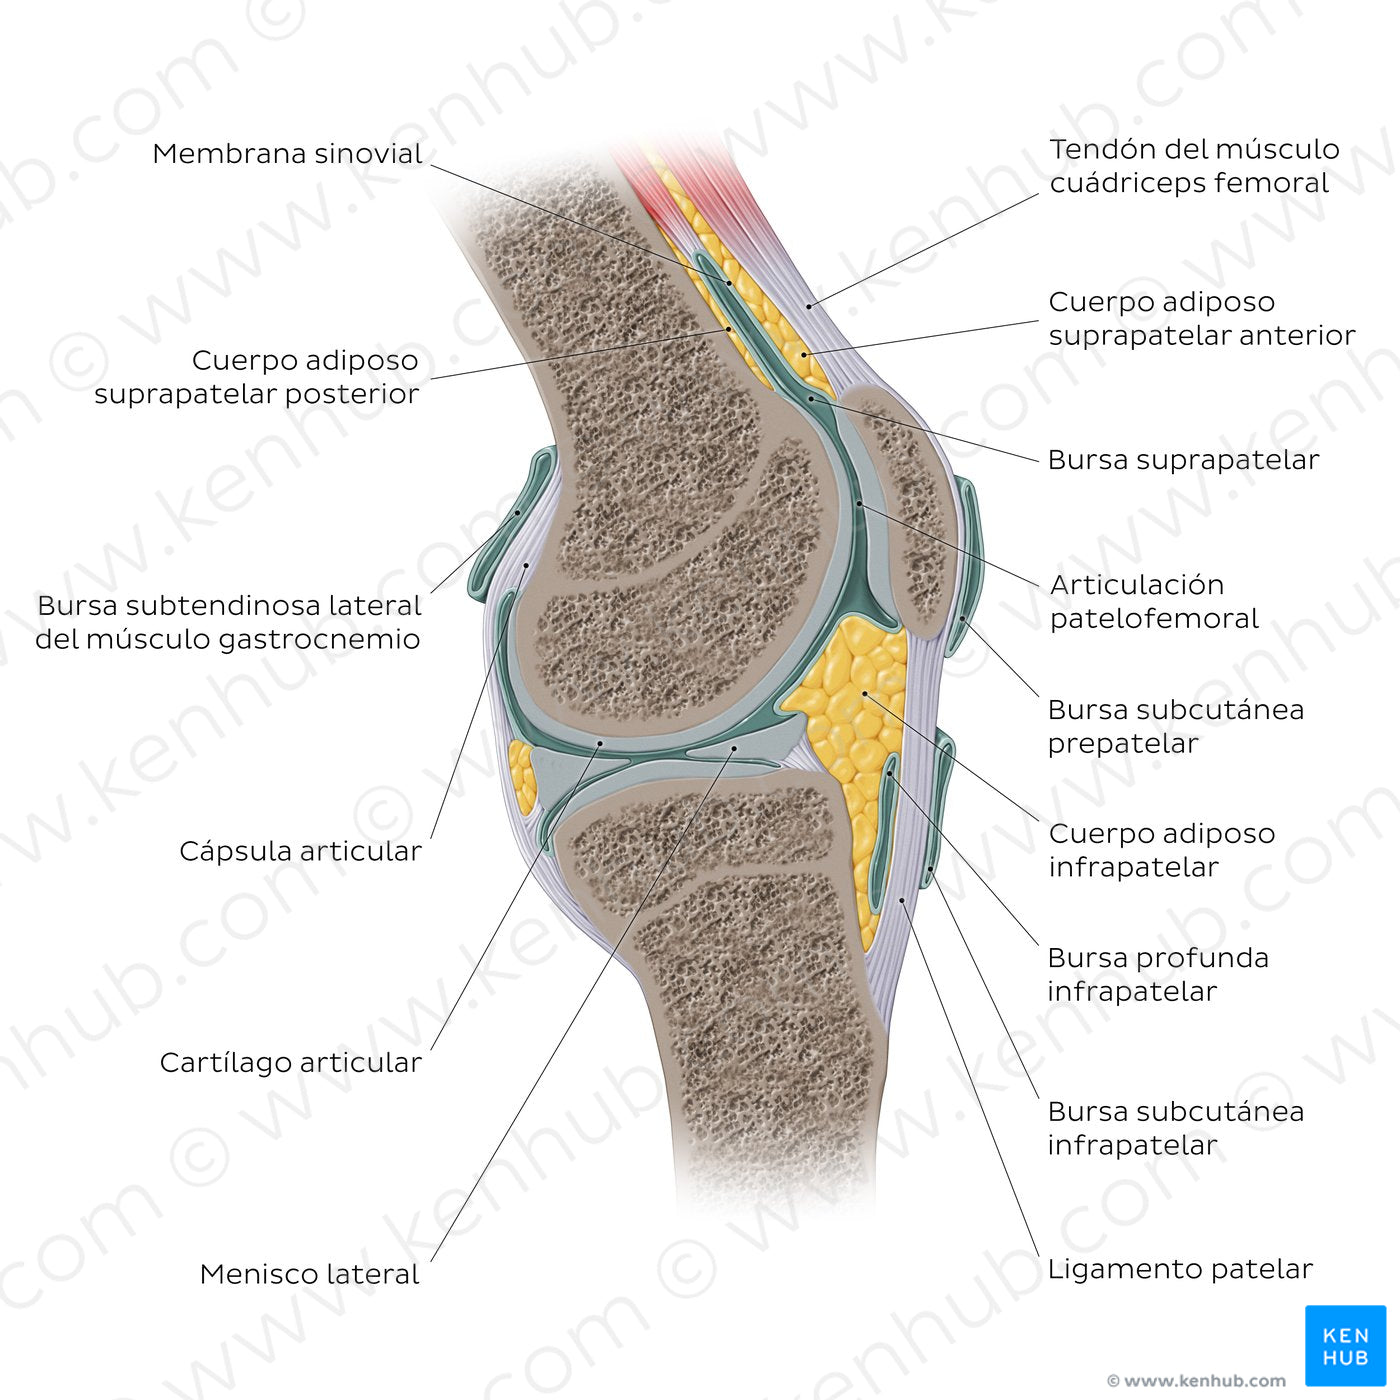 Knee joint - sagittal (Spanish)